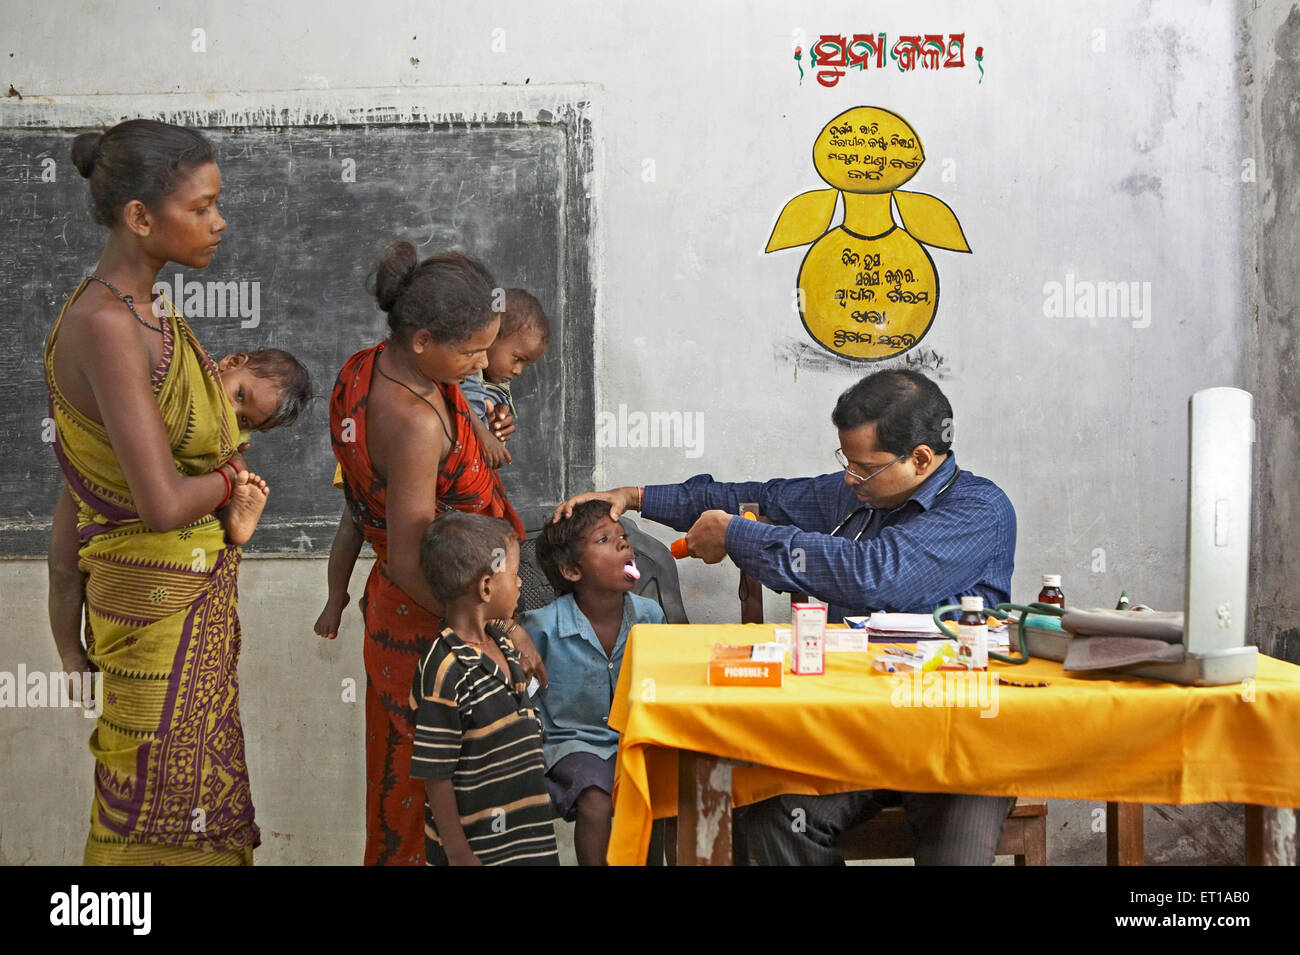 Médecin examinant la santé du pauvre garçon de village à la santé Initiative de camp de contrôle lancée par l'ONG Chinmaya Organisation Inde Asie Banque D'Images